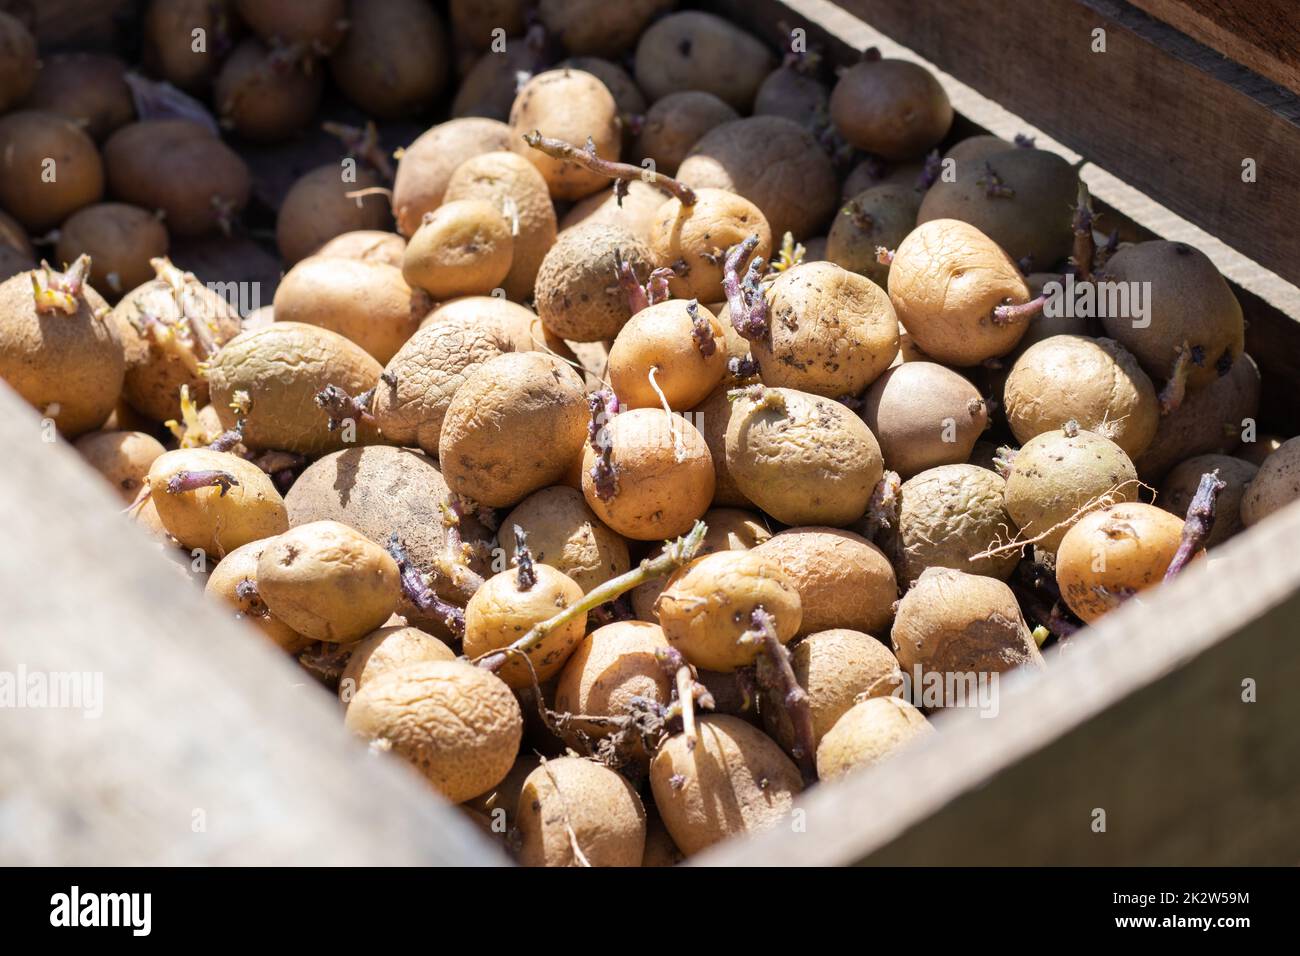 Patatas para plantar con brotes en una caja de madera. Germinaron patatas  de siembra viejas. Plántulas de tubérculo de patata. El concepto de  agricultura y jardinería, cultivo y cuidado de hortalizas Fotografía